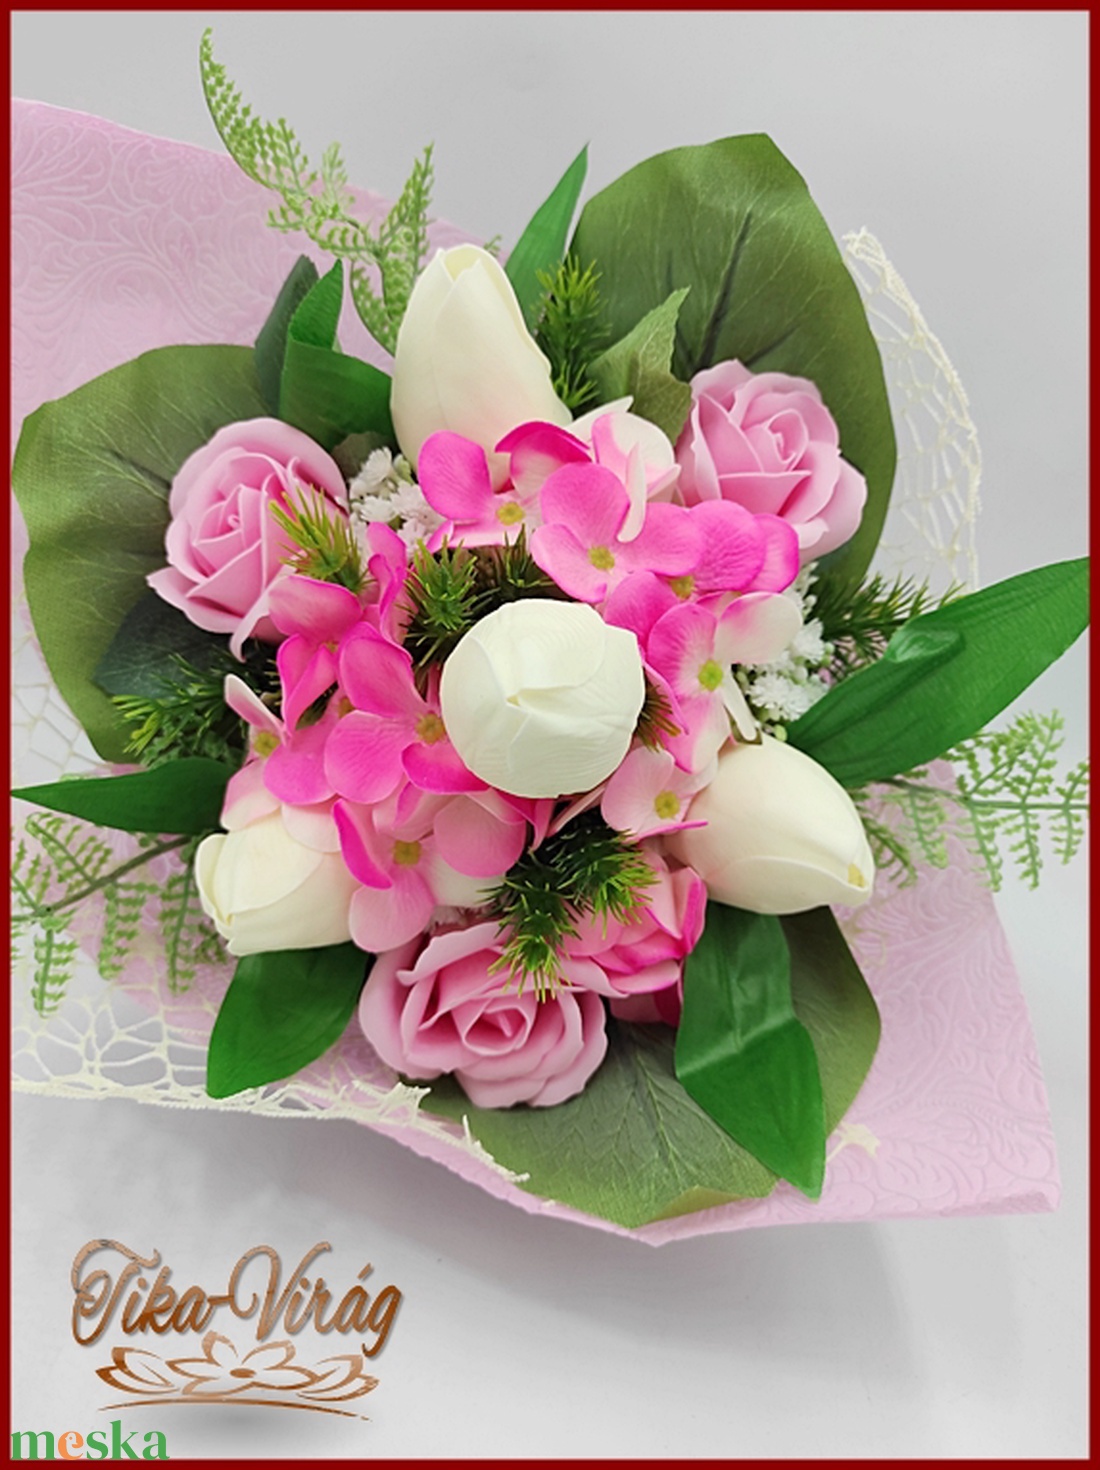 Tulipán-rózsa-hortenzia szappan-virágokból álló csokor - otthon & lakás - dekoráció - virágdísz és tartó - csokor & virágdísz - Meska.hu